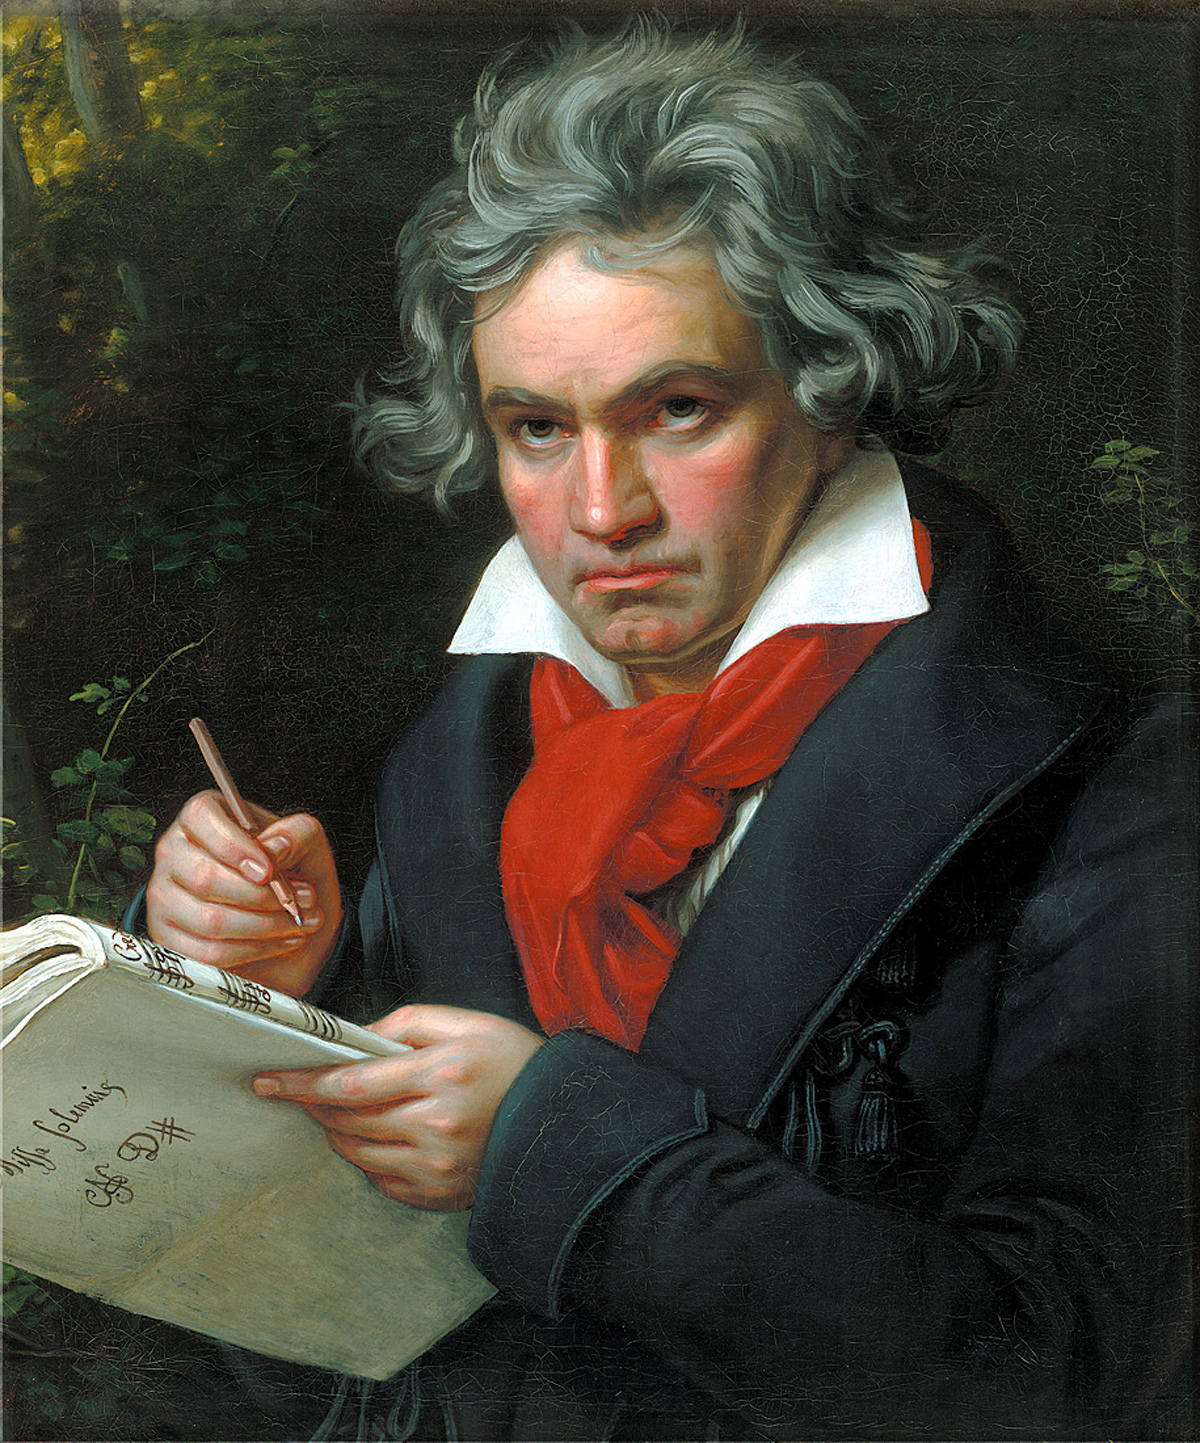 Beethoven, uno de los grandes compositores del Clasicismo más reconocidos de la historia, y comenzó a perder audición a los 20 años hasta quedarse completamente sordo.